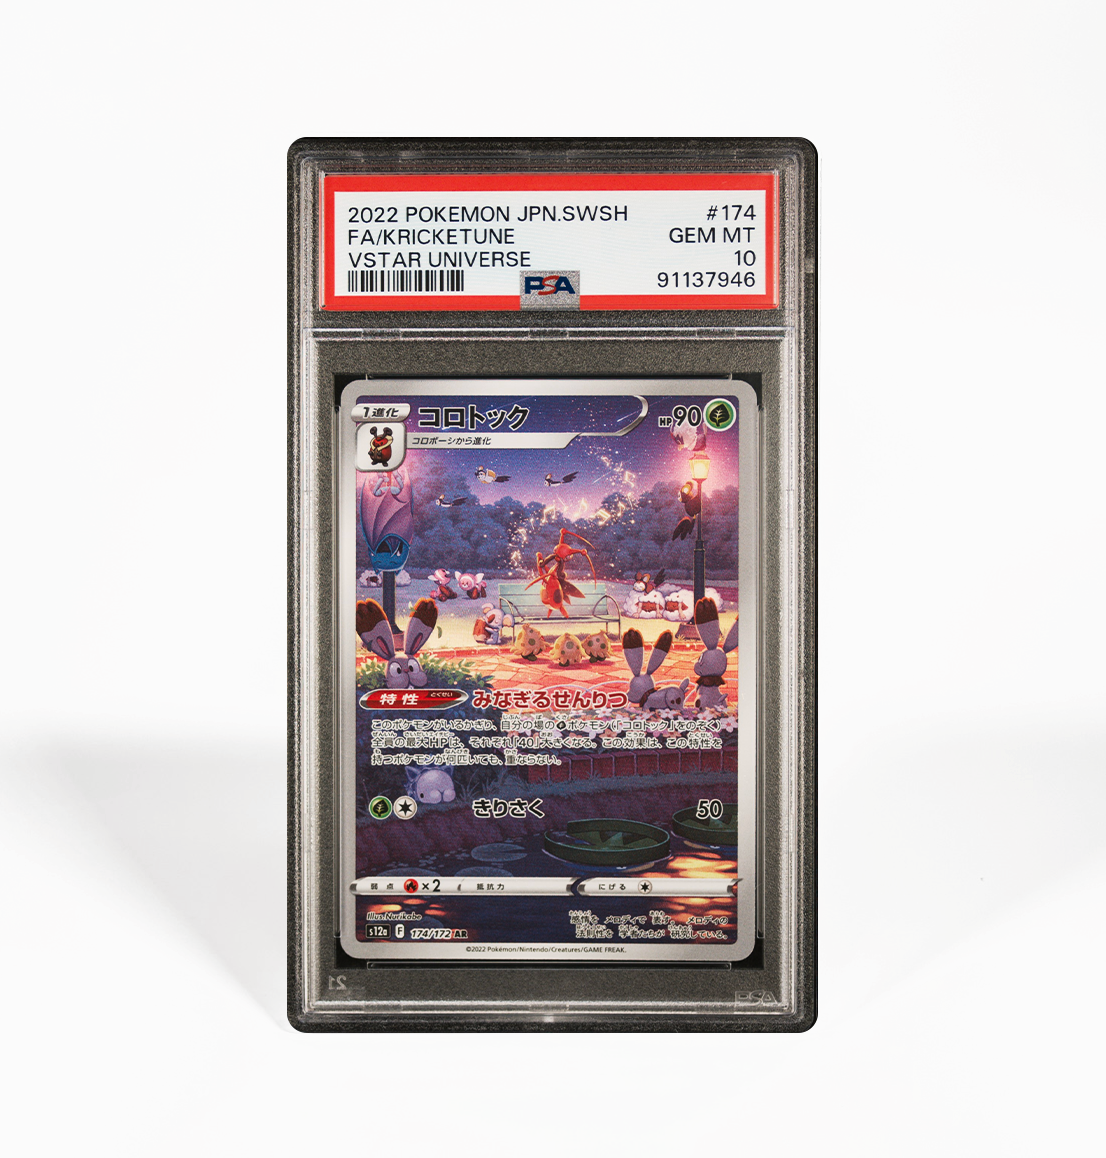 PSA 10 Kricketune #174 VStar Universe s12a Japanese Pokemon card